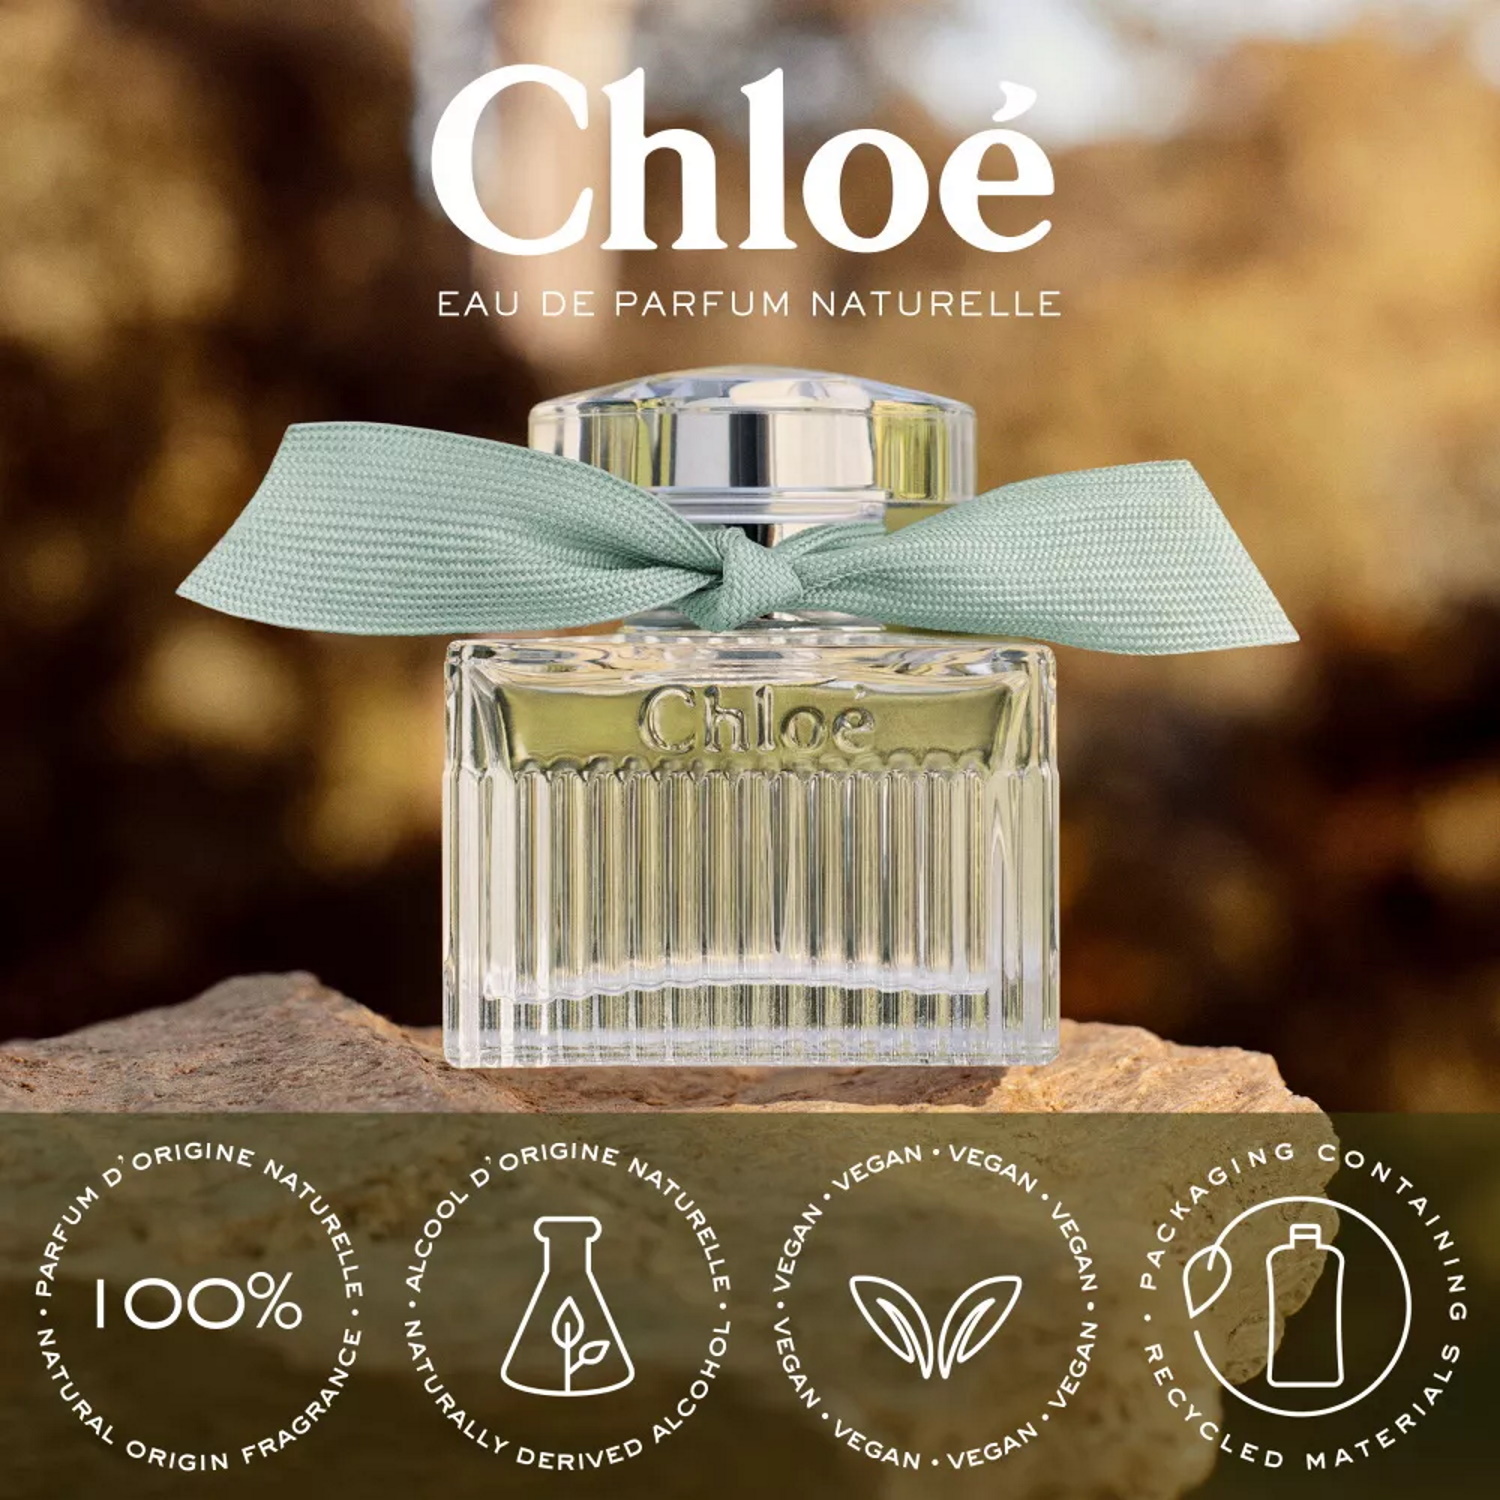 Chloé Eau De Parfum Naturelle parfum éco-responsables, végans et engagés